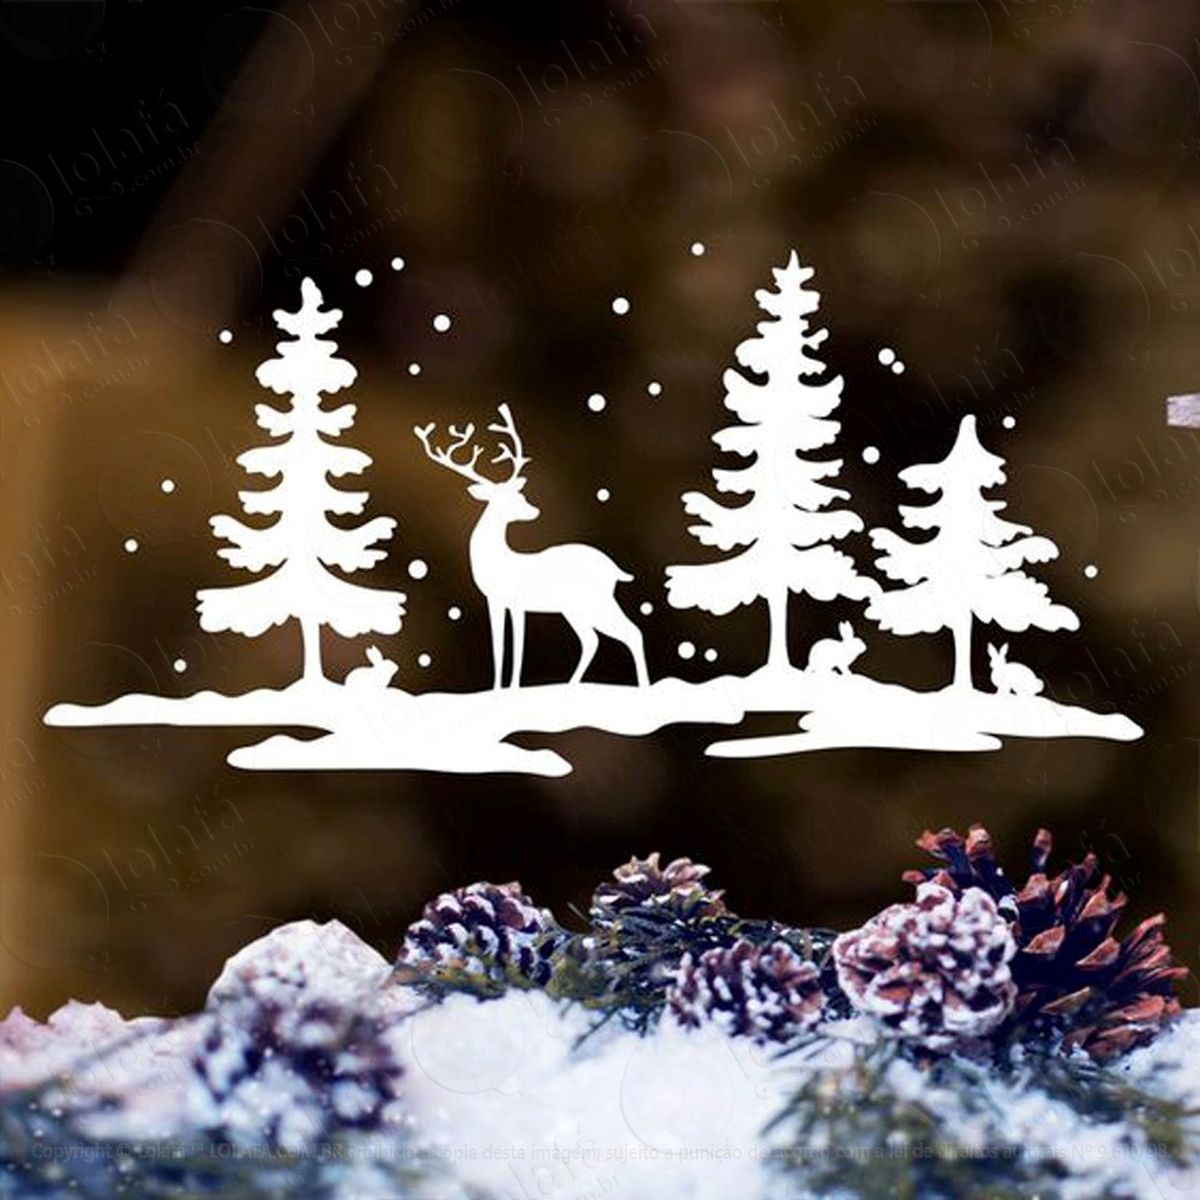 alce na floresta nevando adesivo de natal para vitrine, parede, porta de vidro - decoração natalina mod:262